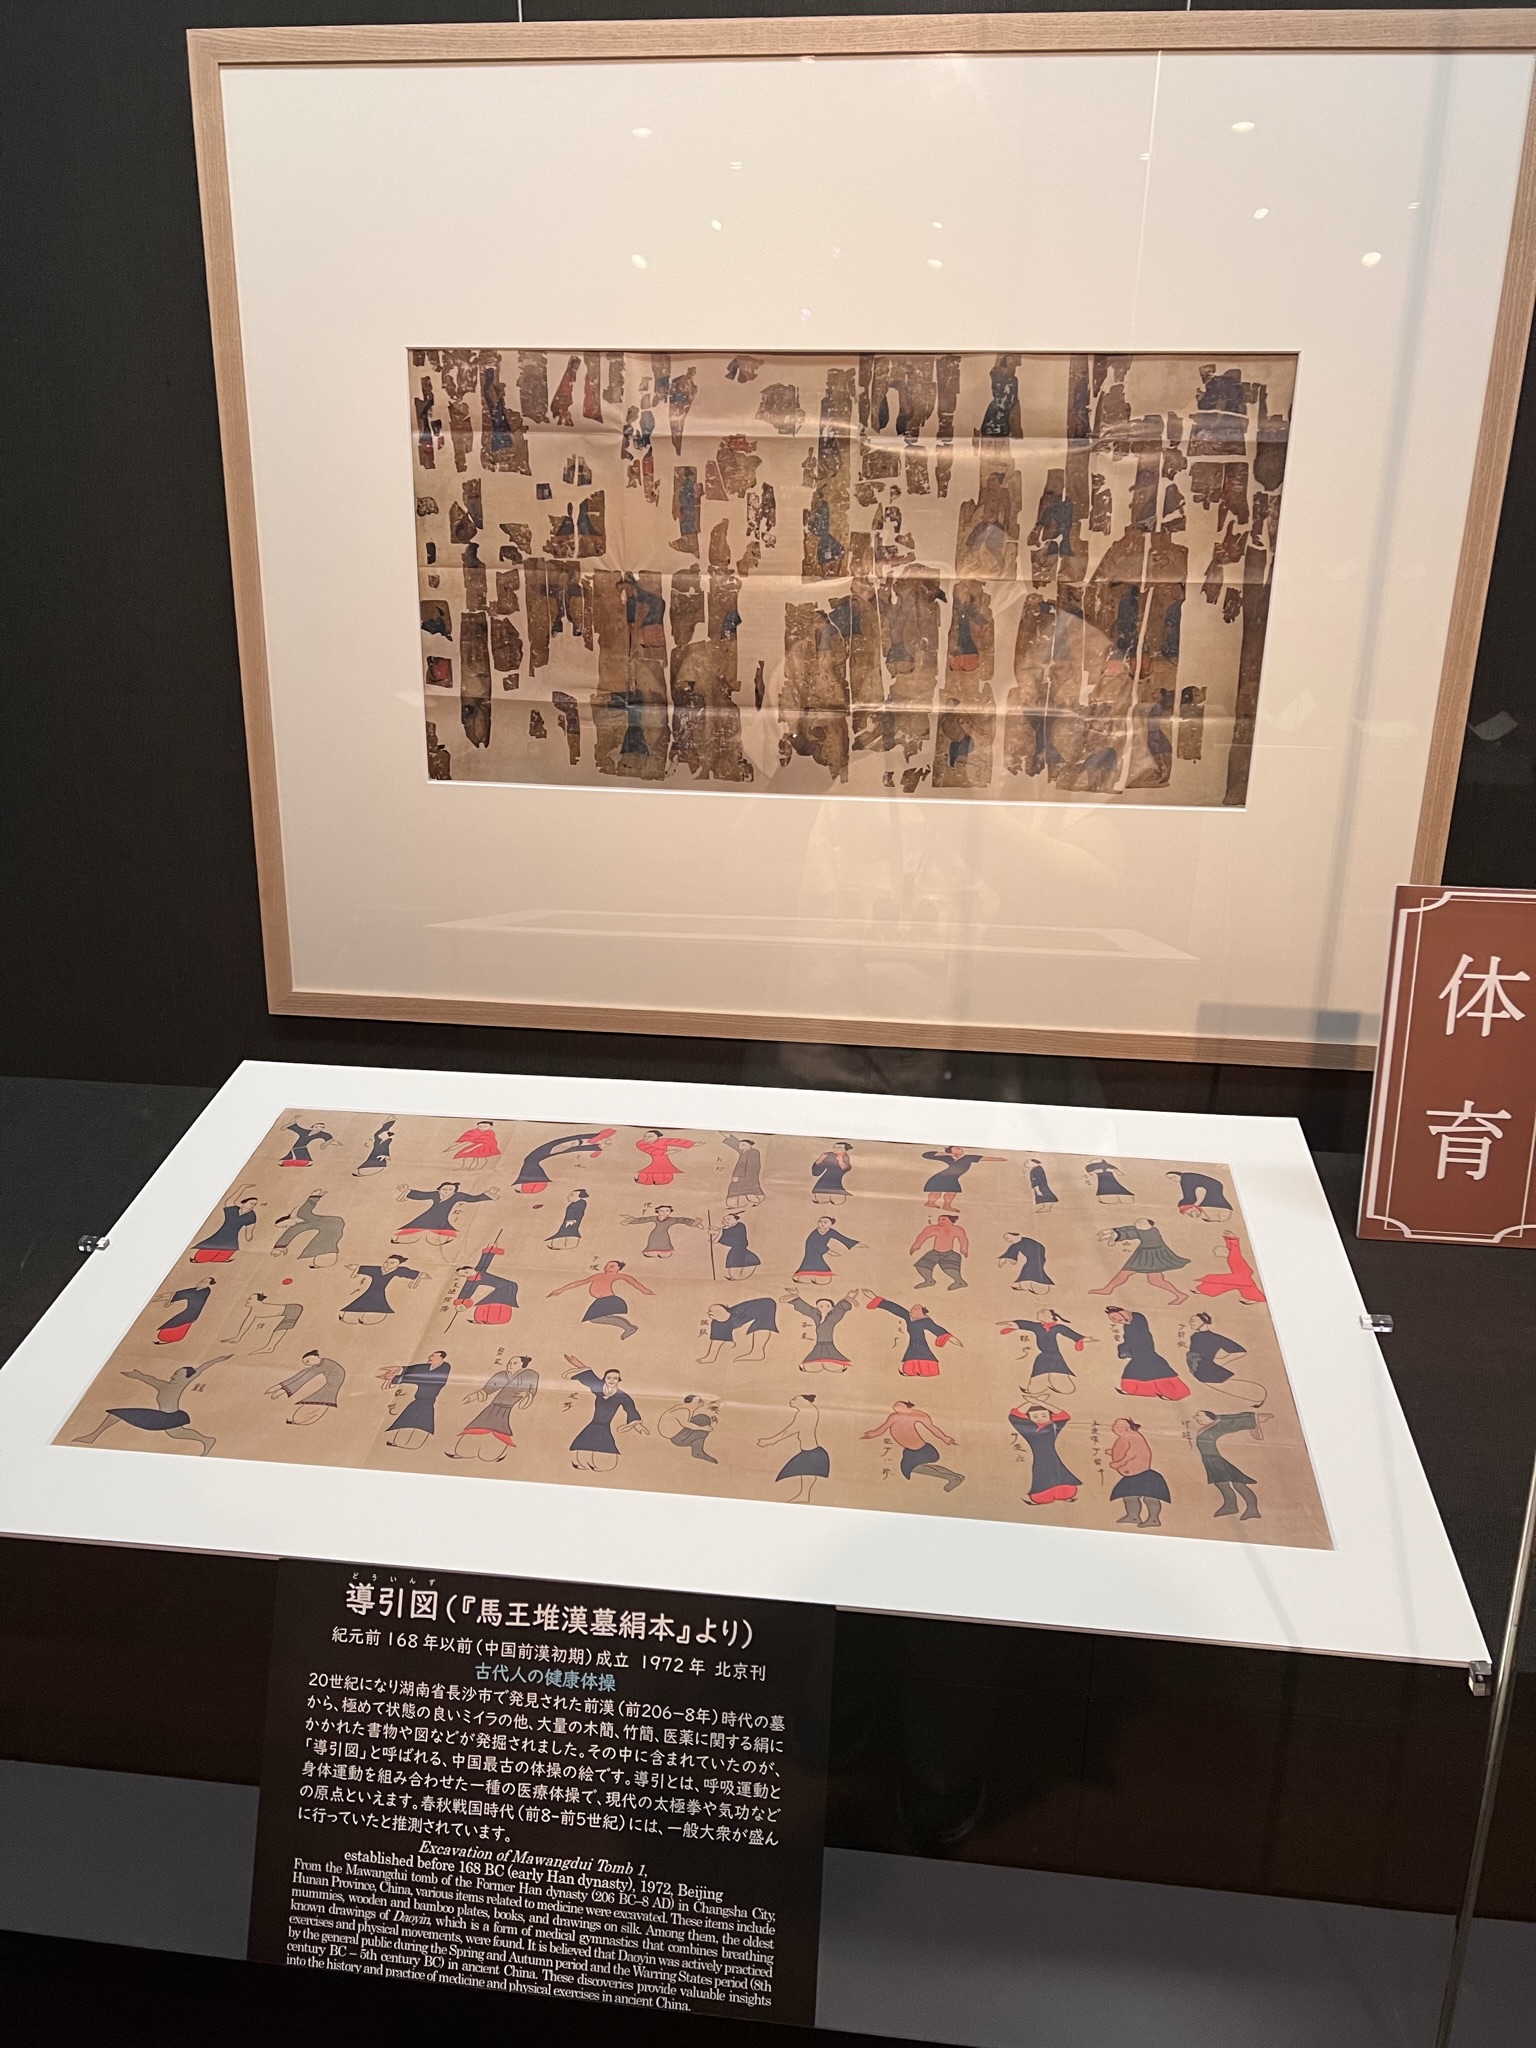 「導引図」（『馬王堆漢墓絹本』より）紀元前168年以前成立、1972年北京刊